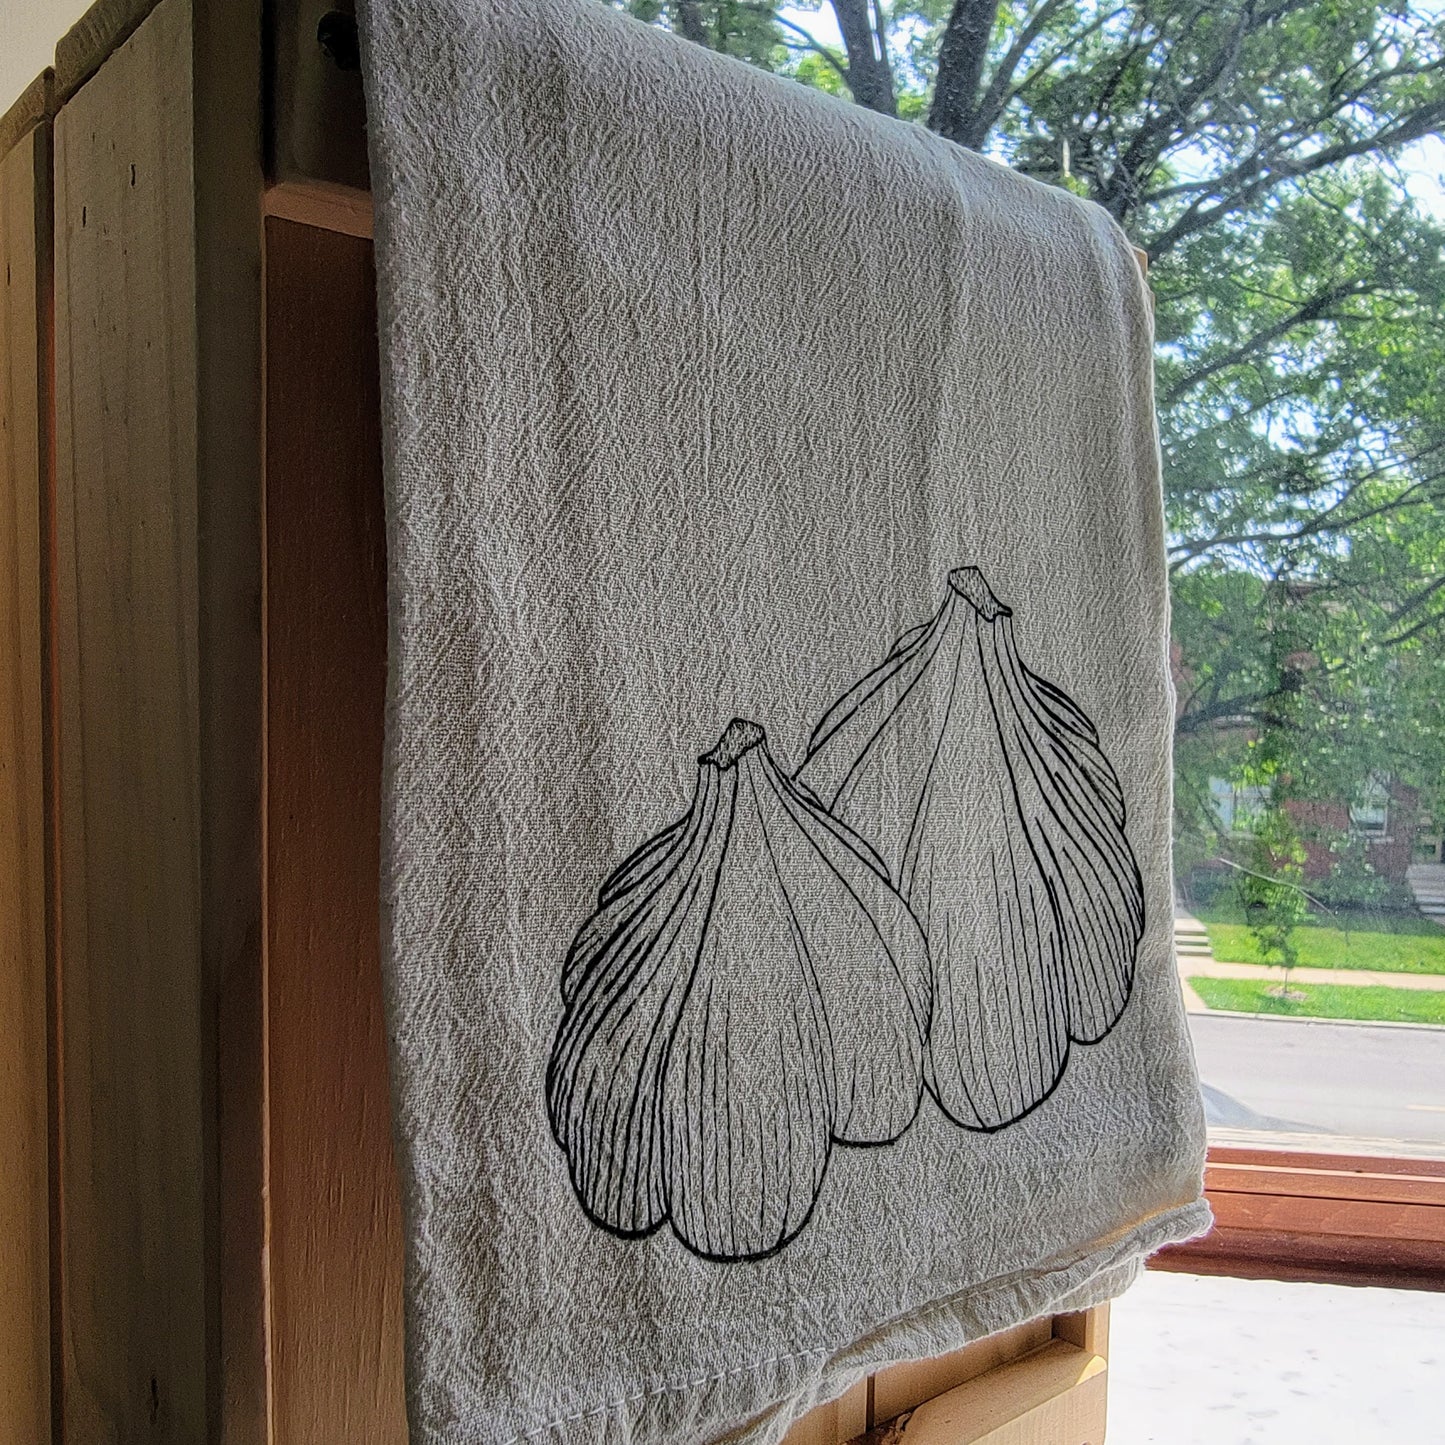 Garlic Screen Printed Tea Towel - Hanging Shot